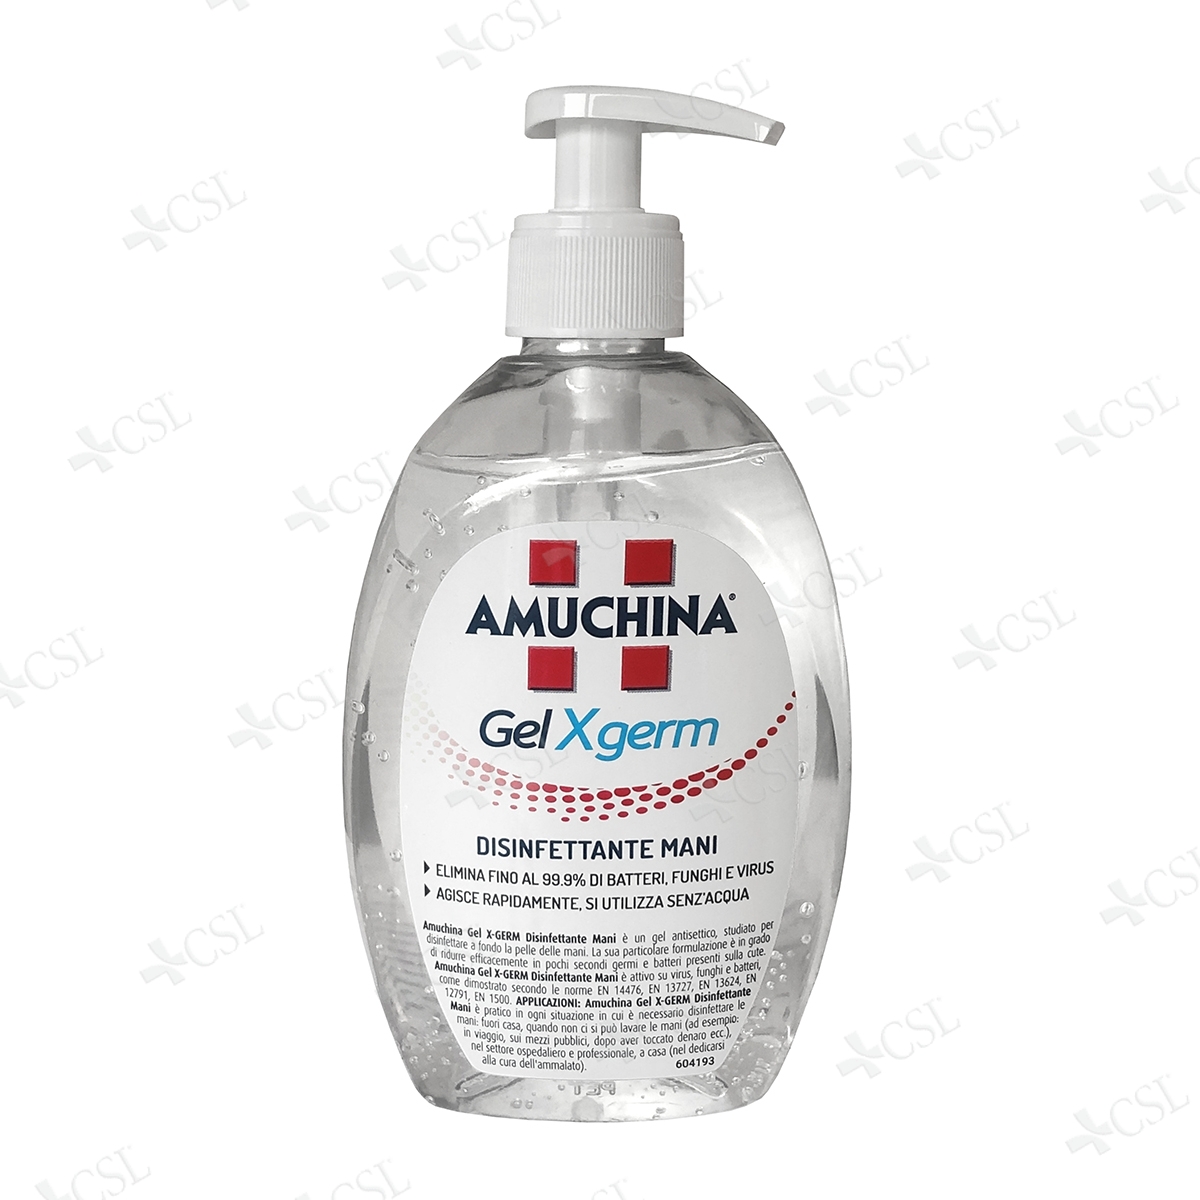 Amuchina Gel Xgerm antisettico mani - 500 ml - CSLmedical